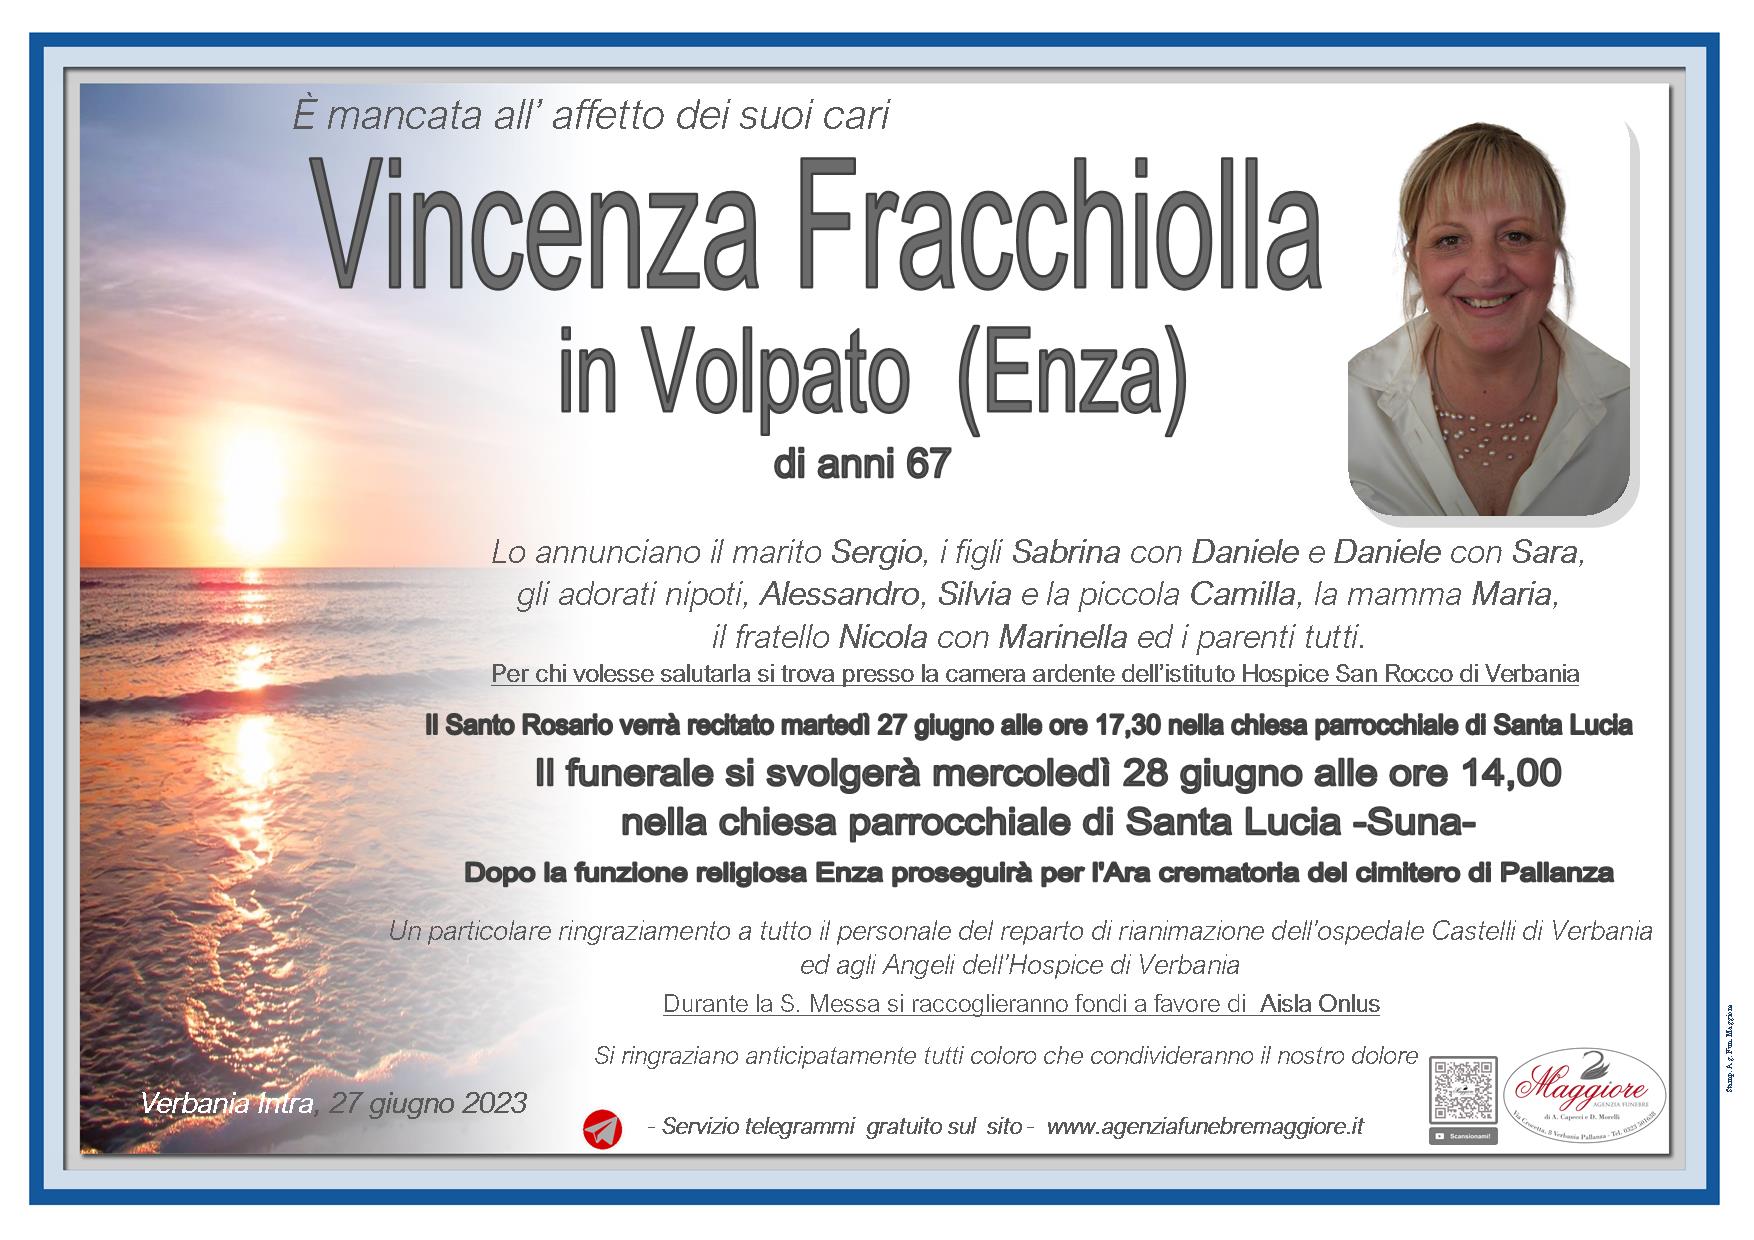 Vincenza Fracchiolla in Volpato